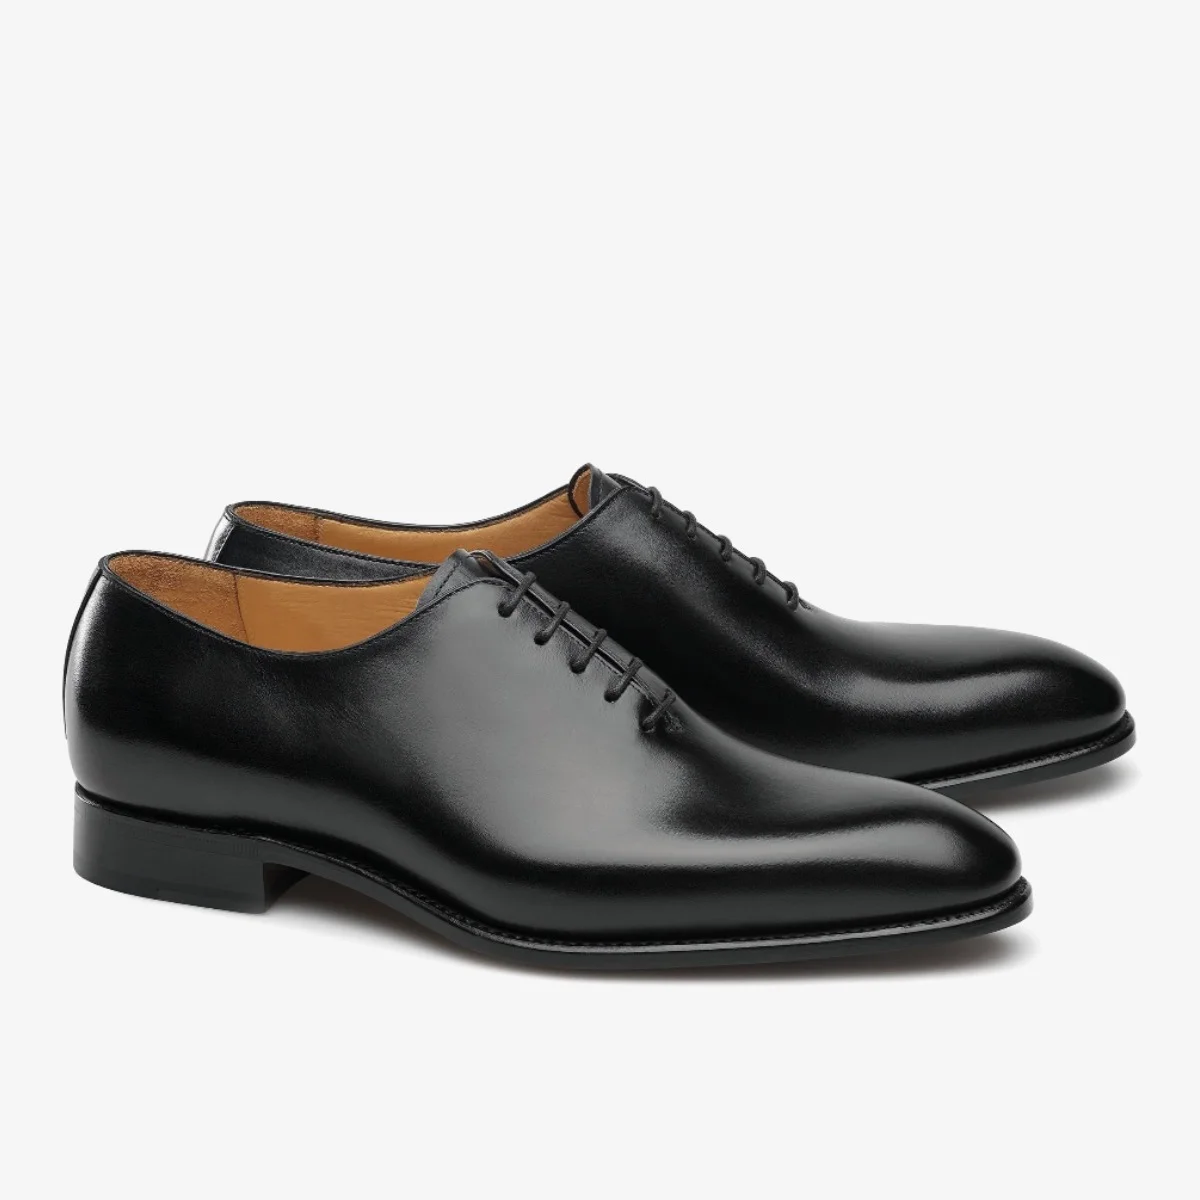 Carlos Santos 6903 William black wholecut oxford shoes